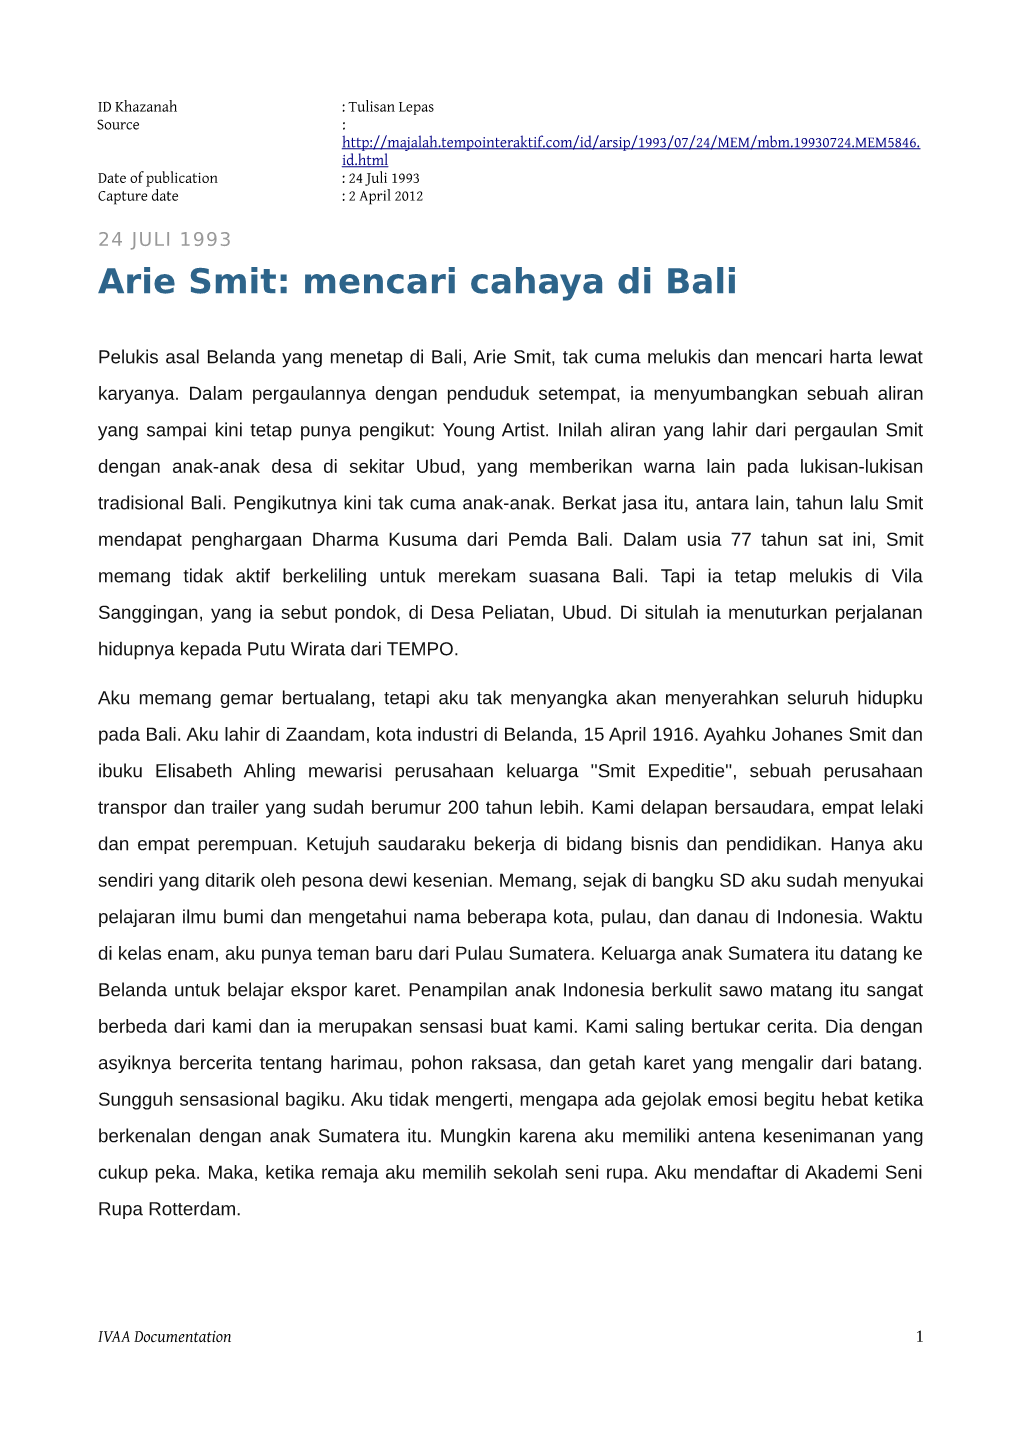 Arie Smit: Mencari Cahaya Di Bali